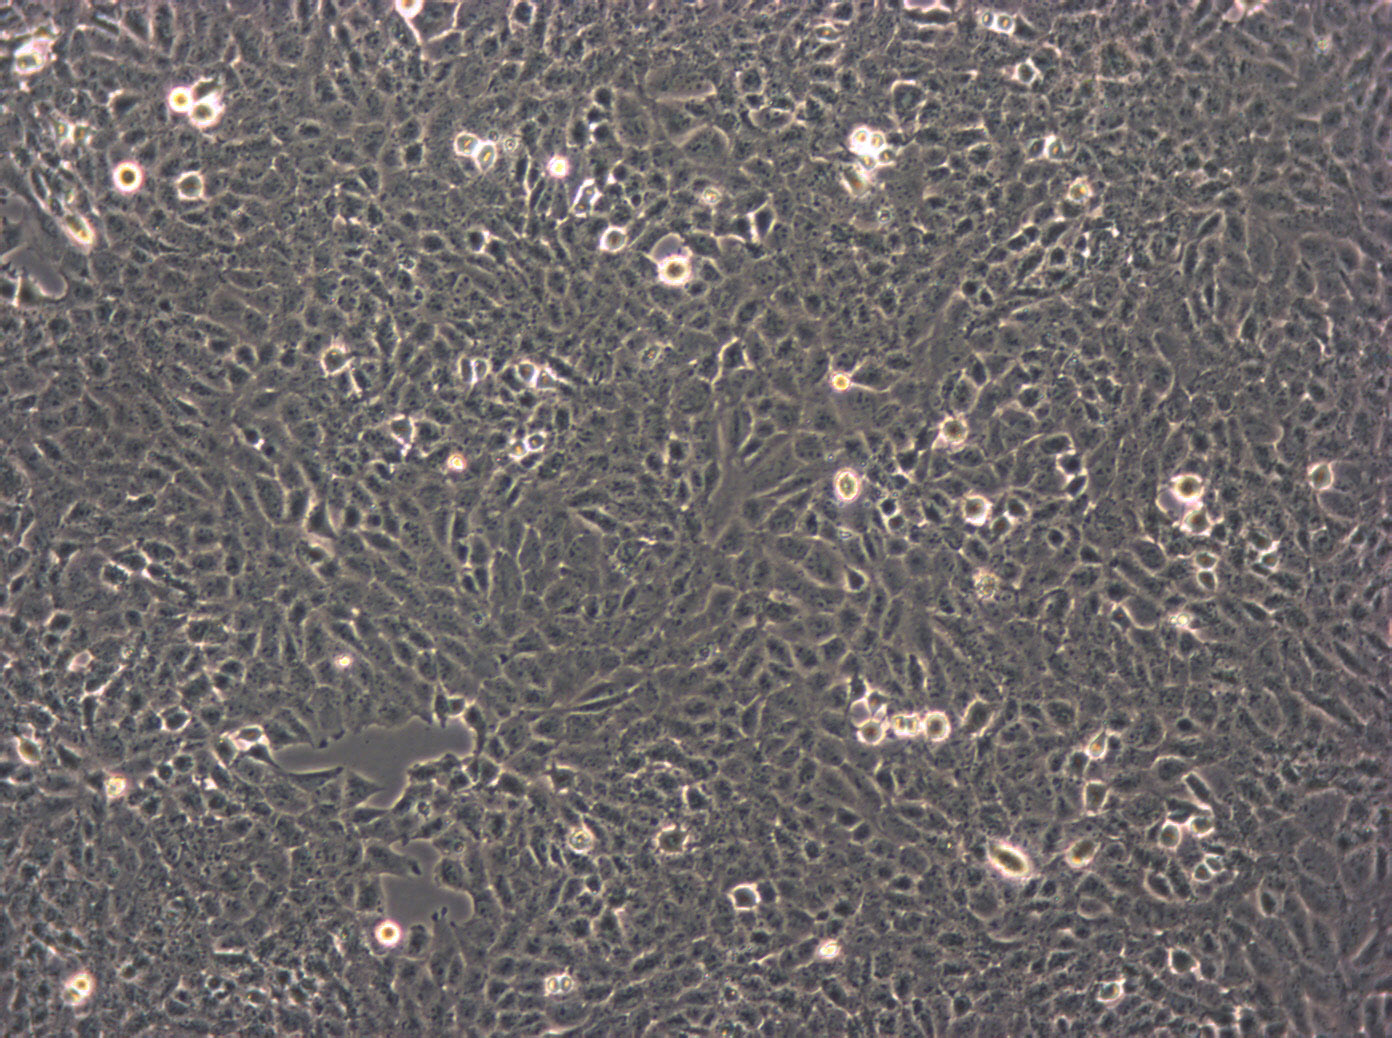 NCI-H2171 epithelioid cells人小细胞肺癌细胞系